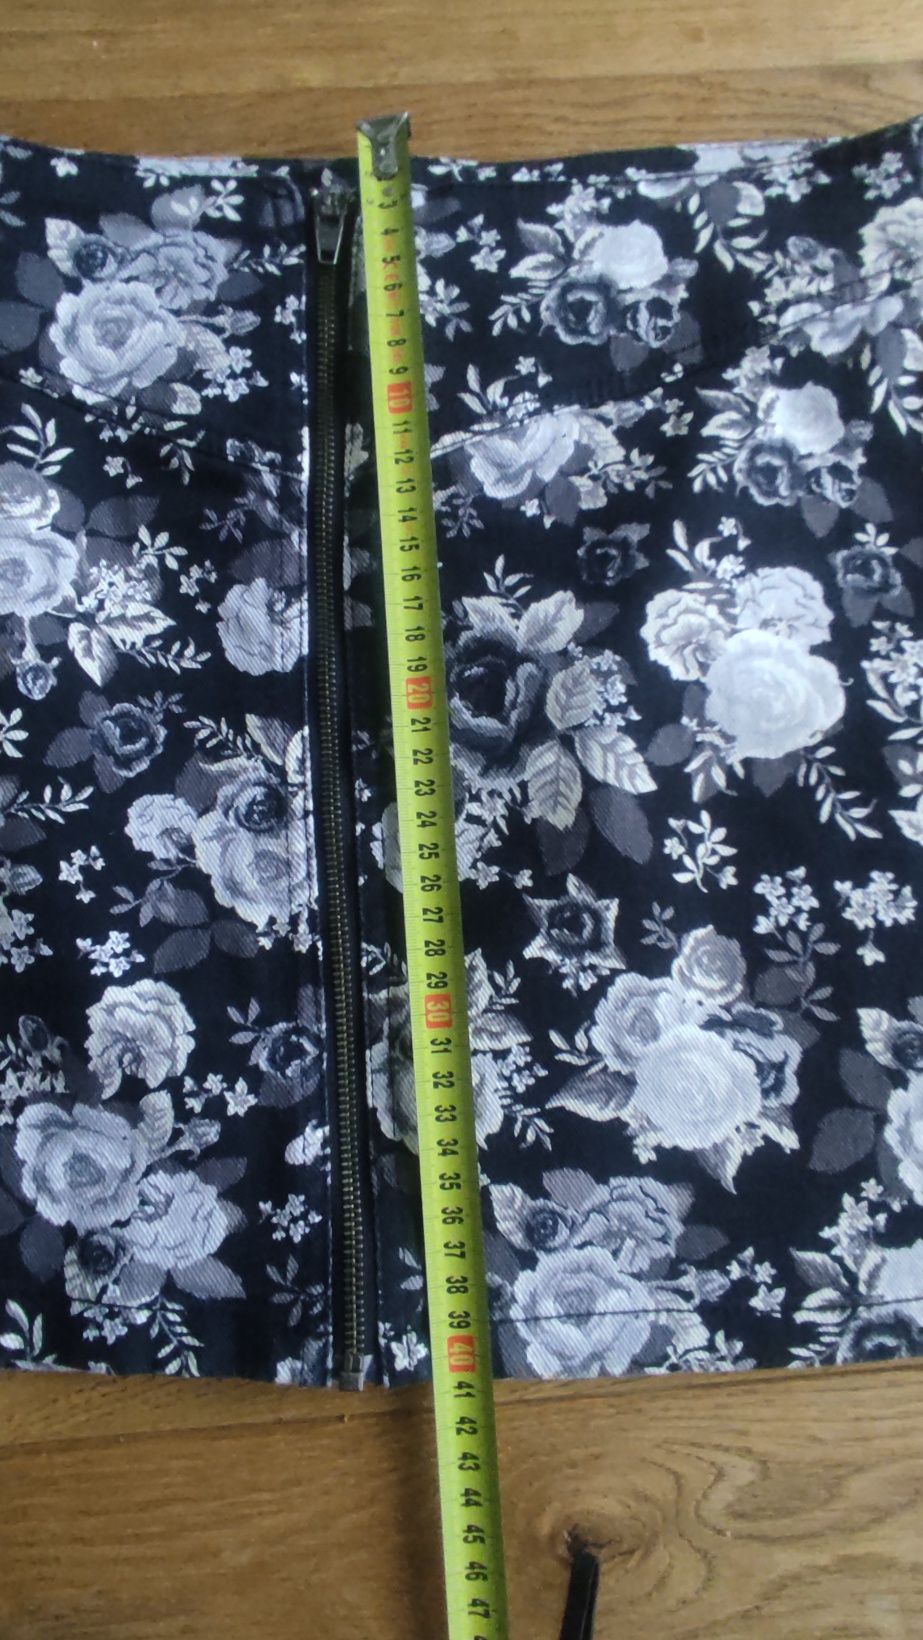 Spódniczka damska mini, czarna w kwiaty. Rozmiar 38 M